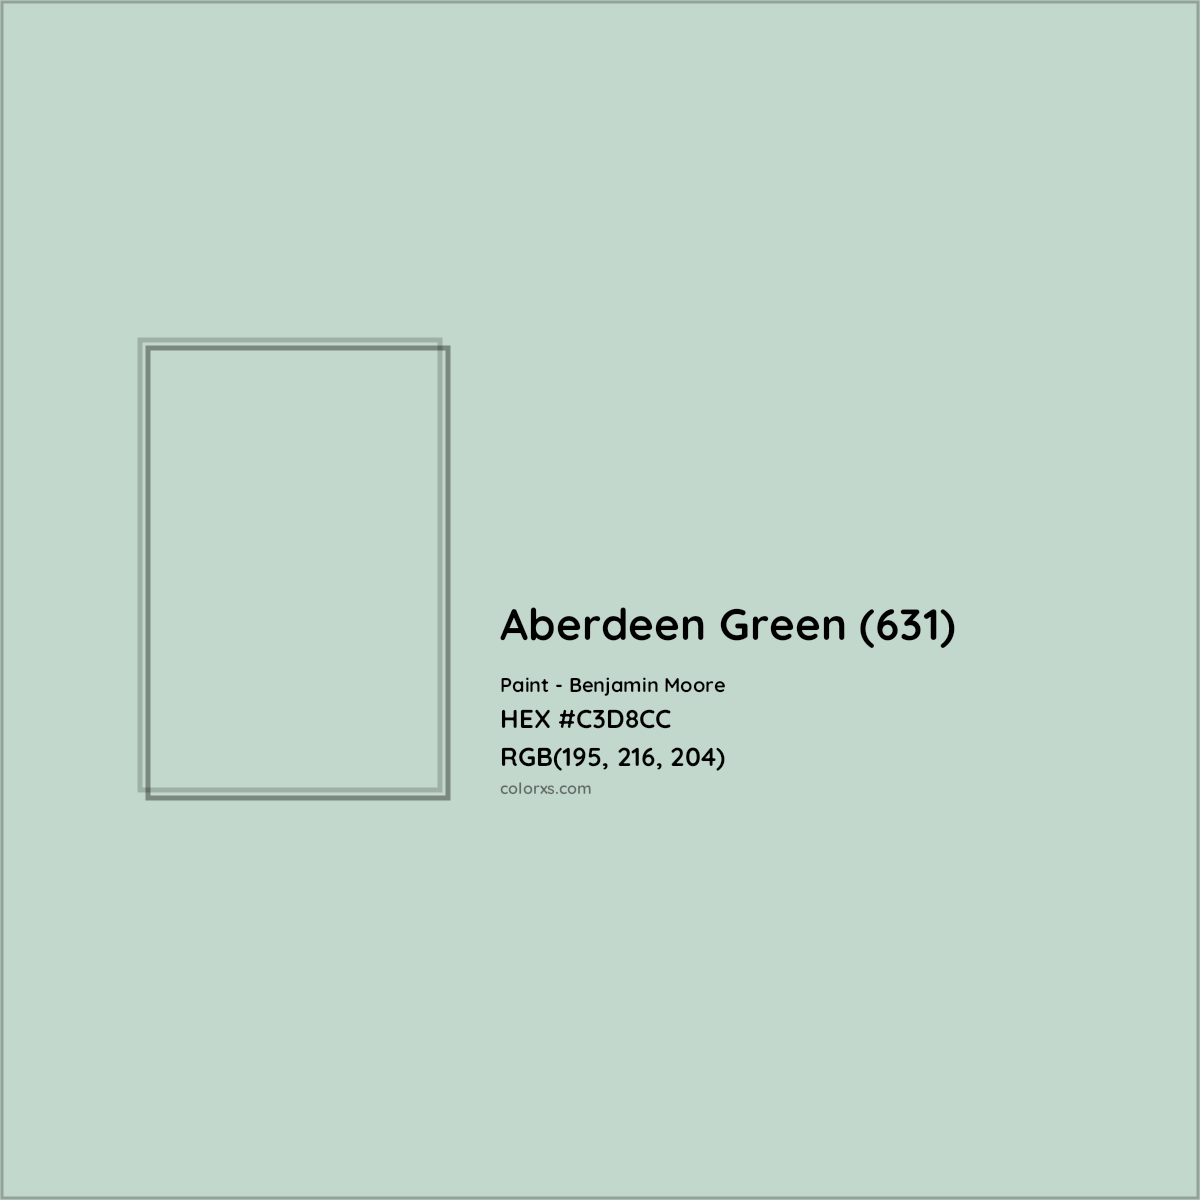 HEX #C3D8CC Aberdeen Green (631) Paint Benjamin Moore - Color Code